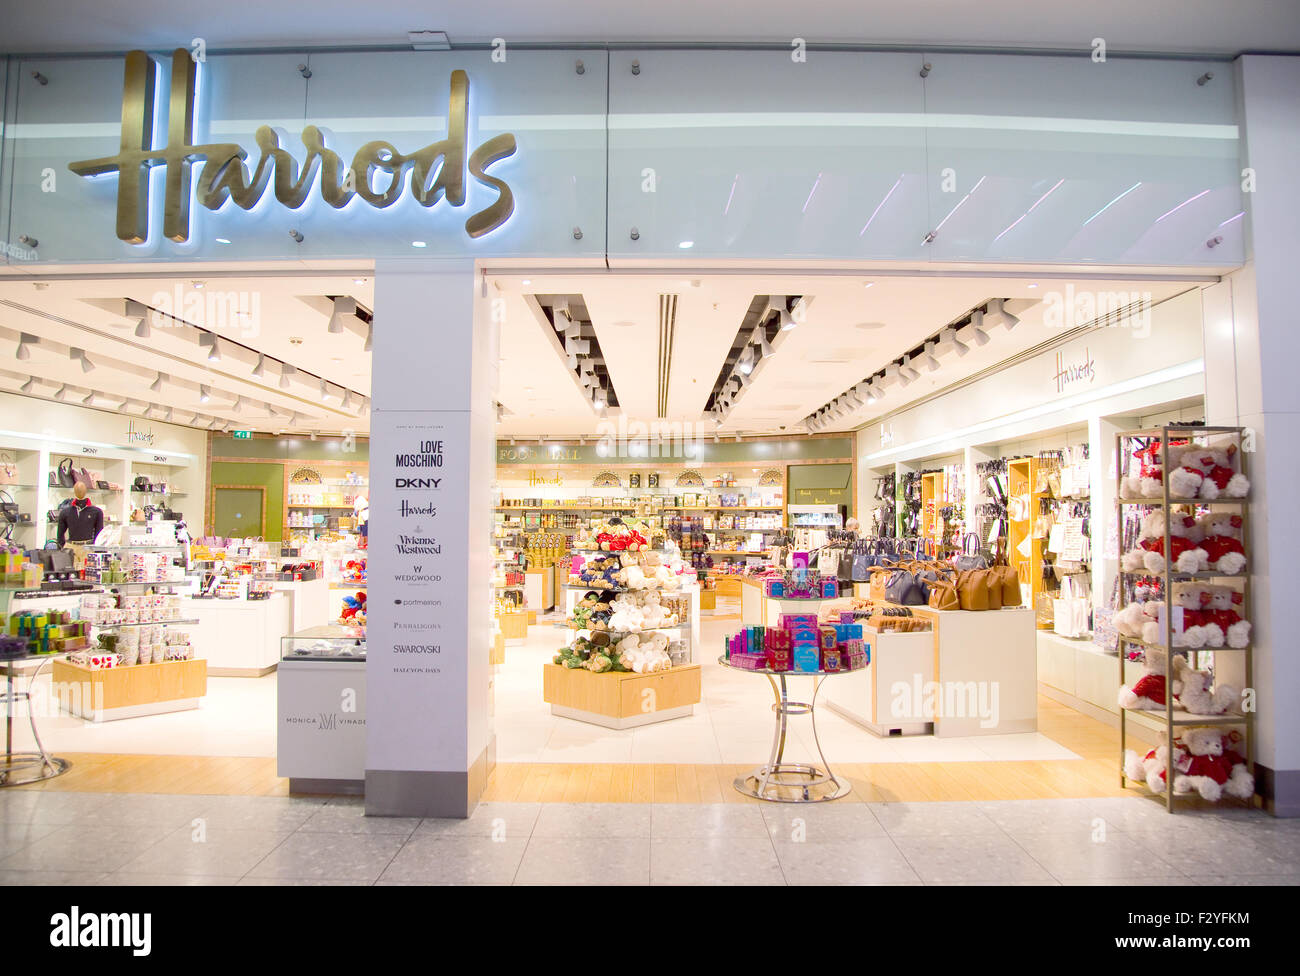 LONDON - 5. SEPTEMBER: Harrods-Shop am Flughafen Heathrow am 5. September 2015 in London, England, Vereinigtes Königreich. Heathrow ist einer der t Stockfoto